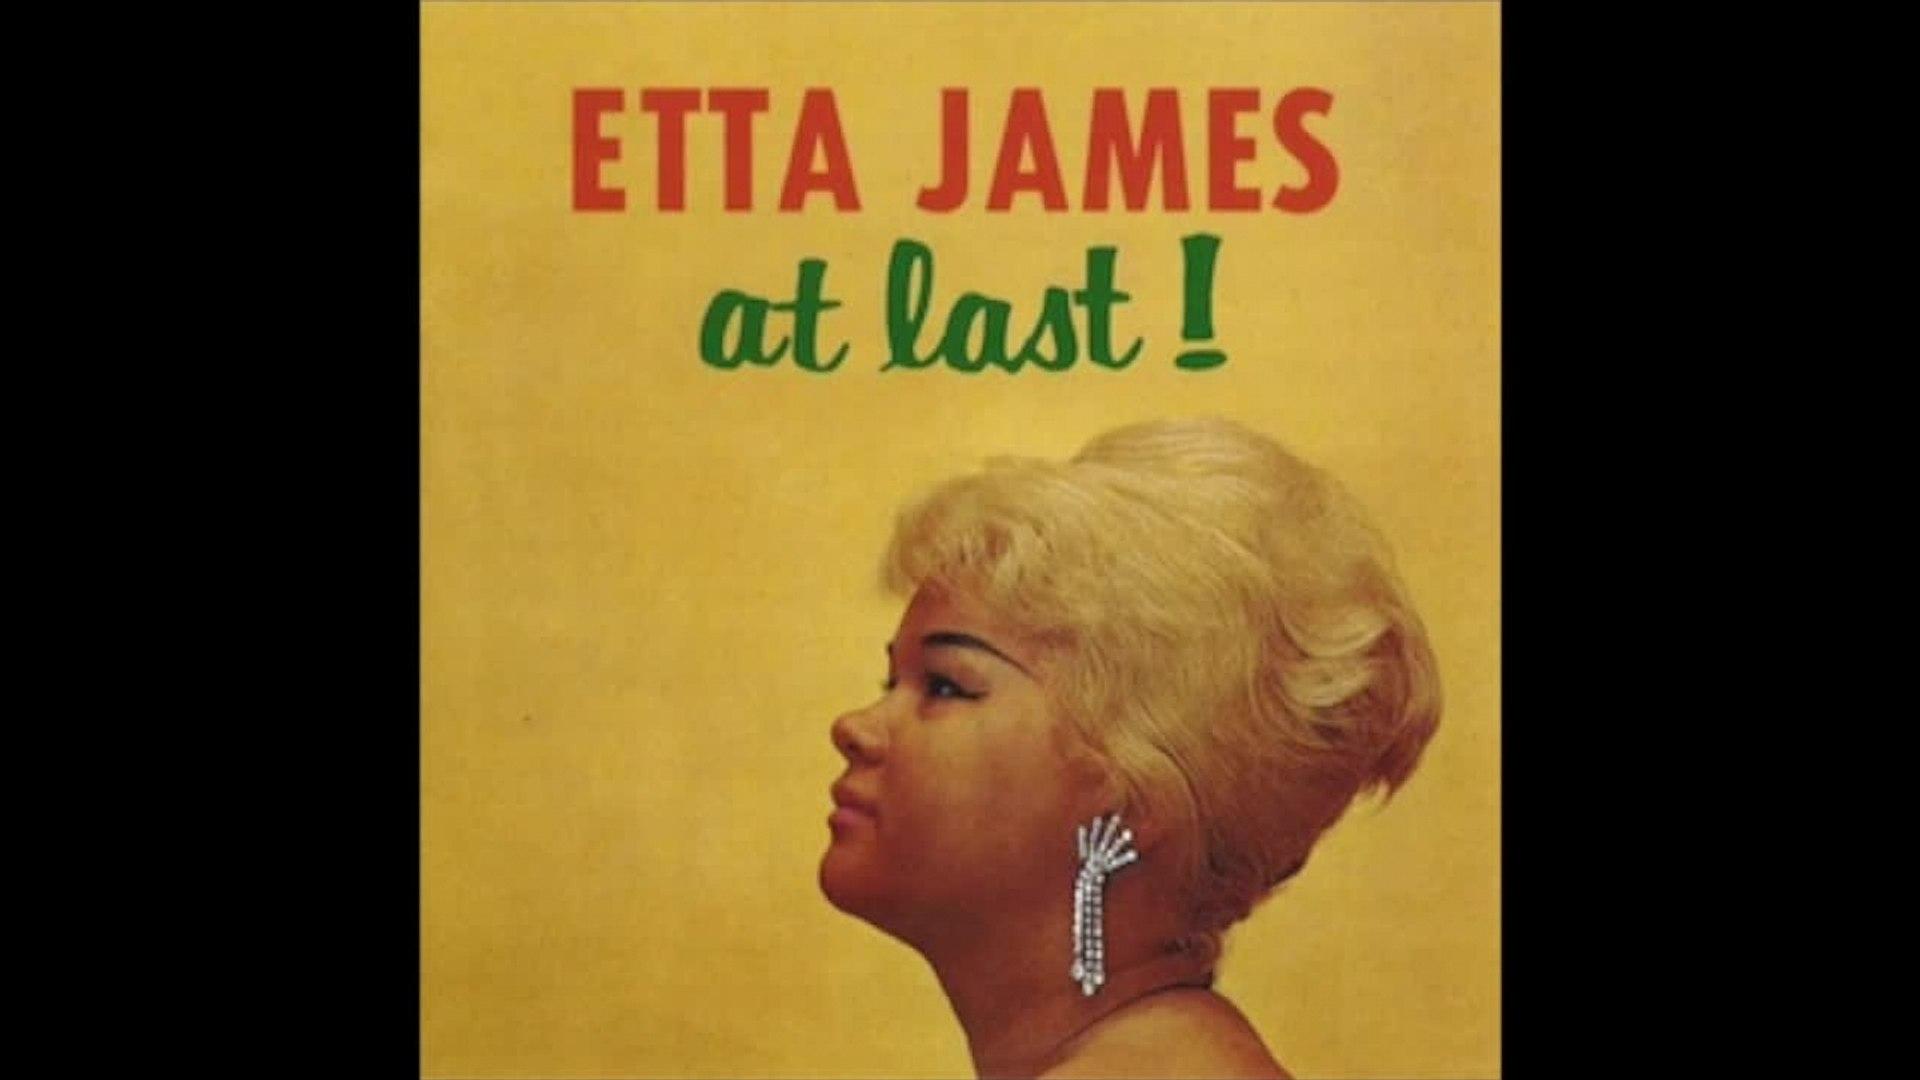 Etta James Last! (R&B Full Album) Rhythm and Blues